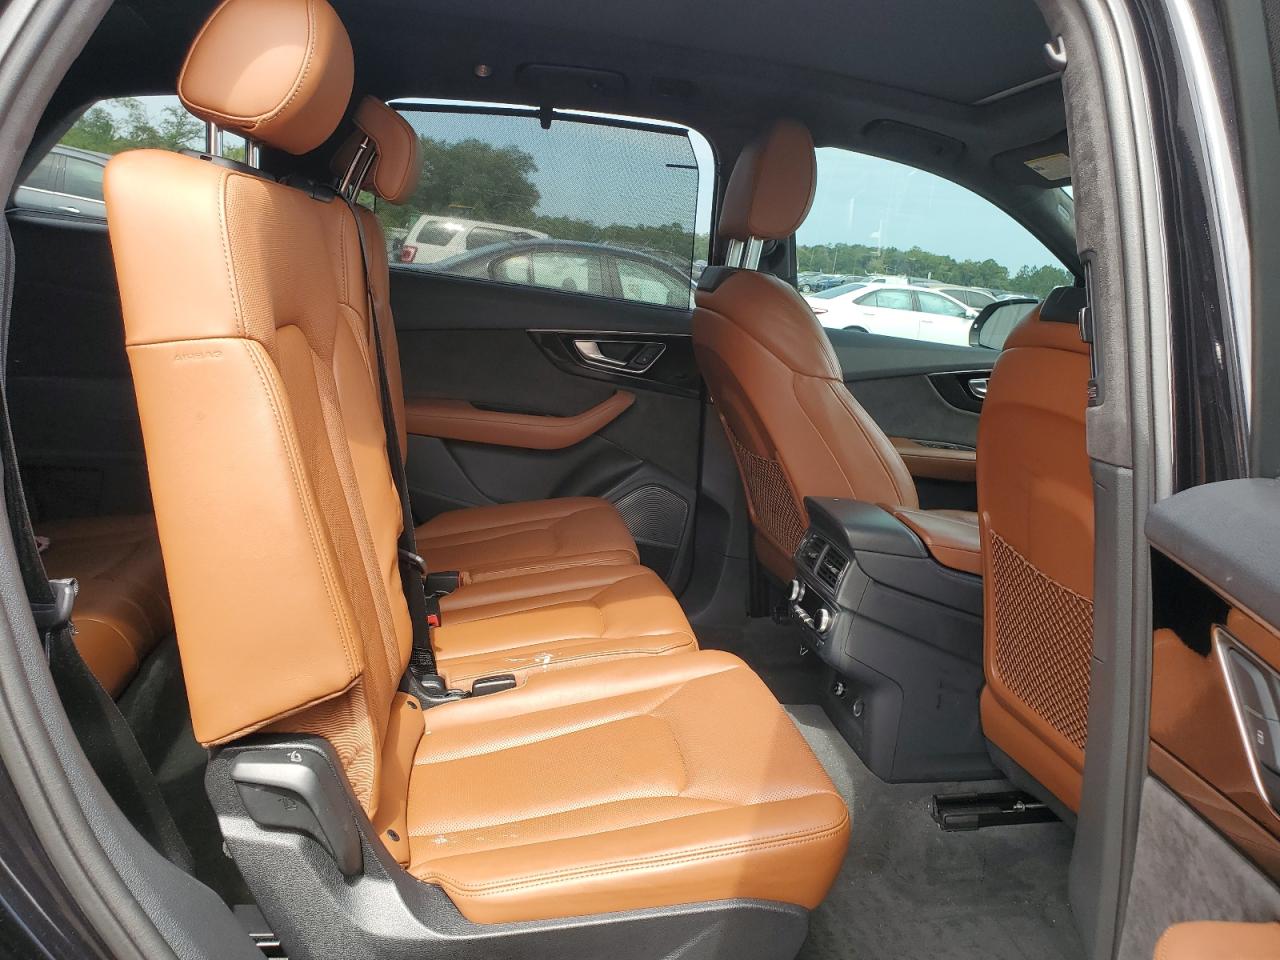 2019 Audi Q7 Prestige VIN: WA1VABF77KD033358 Lot: 64935014